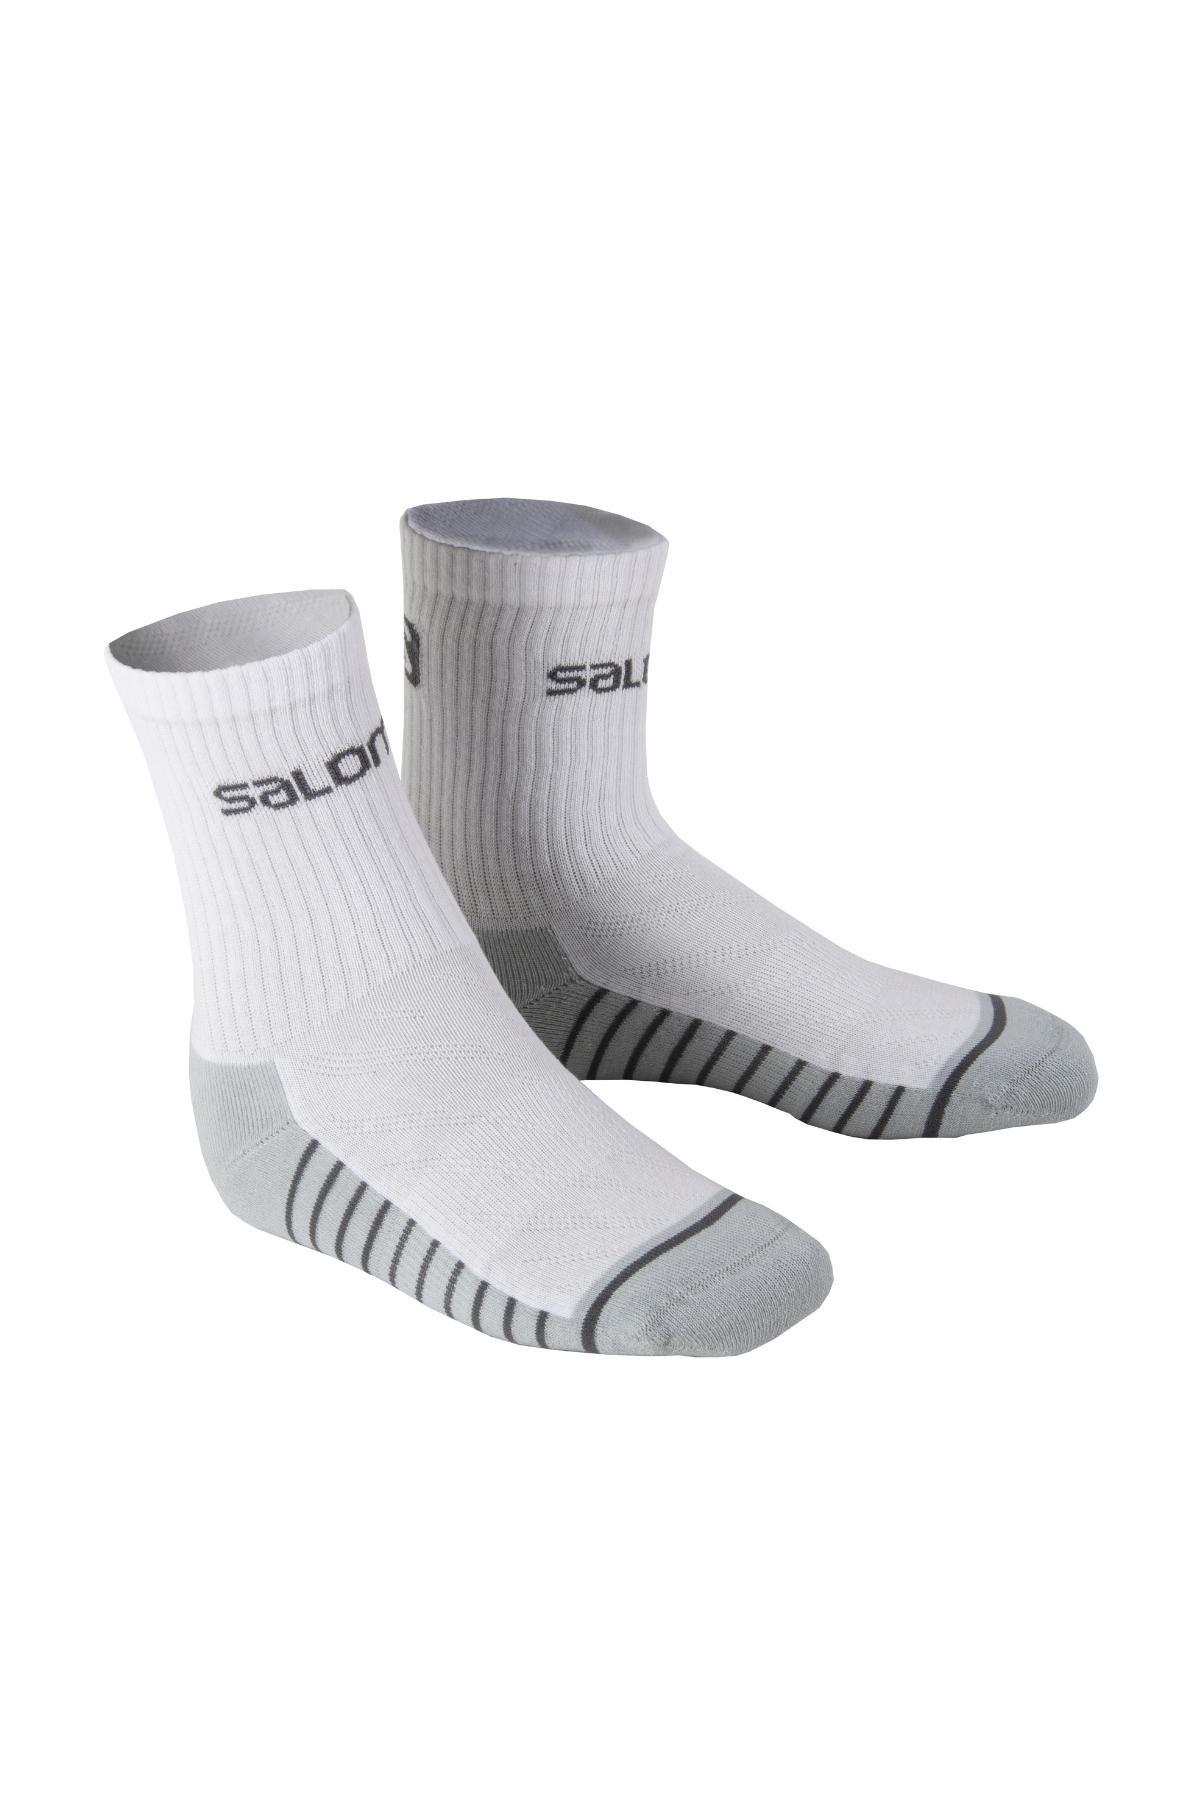 Salomon L16023 - Life 2P Outdoor Beyaz-Gri Çorap